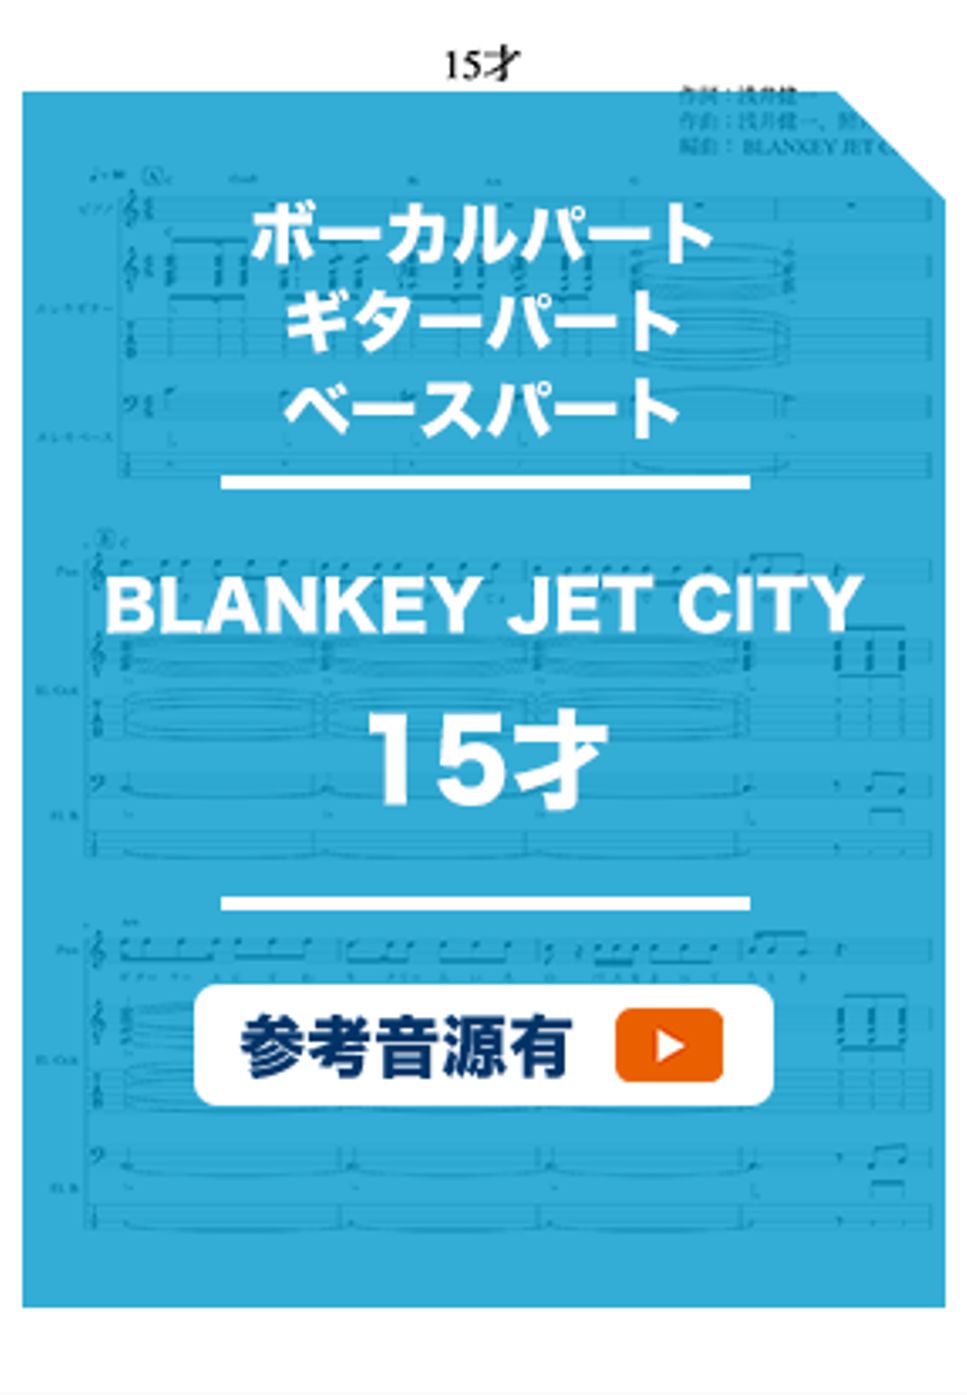 BLANKEY JET CITY - 15才 (バンドスコア) by ホットレモンティーのレモン